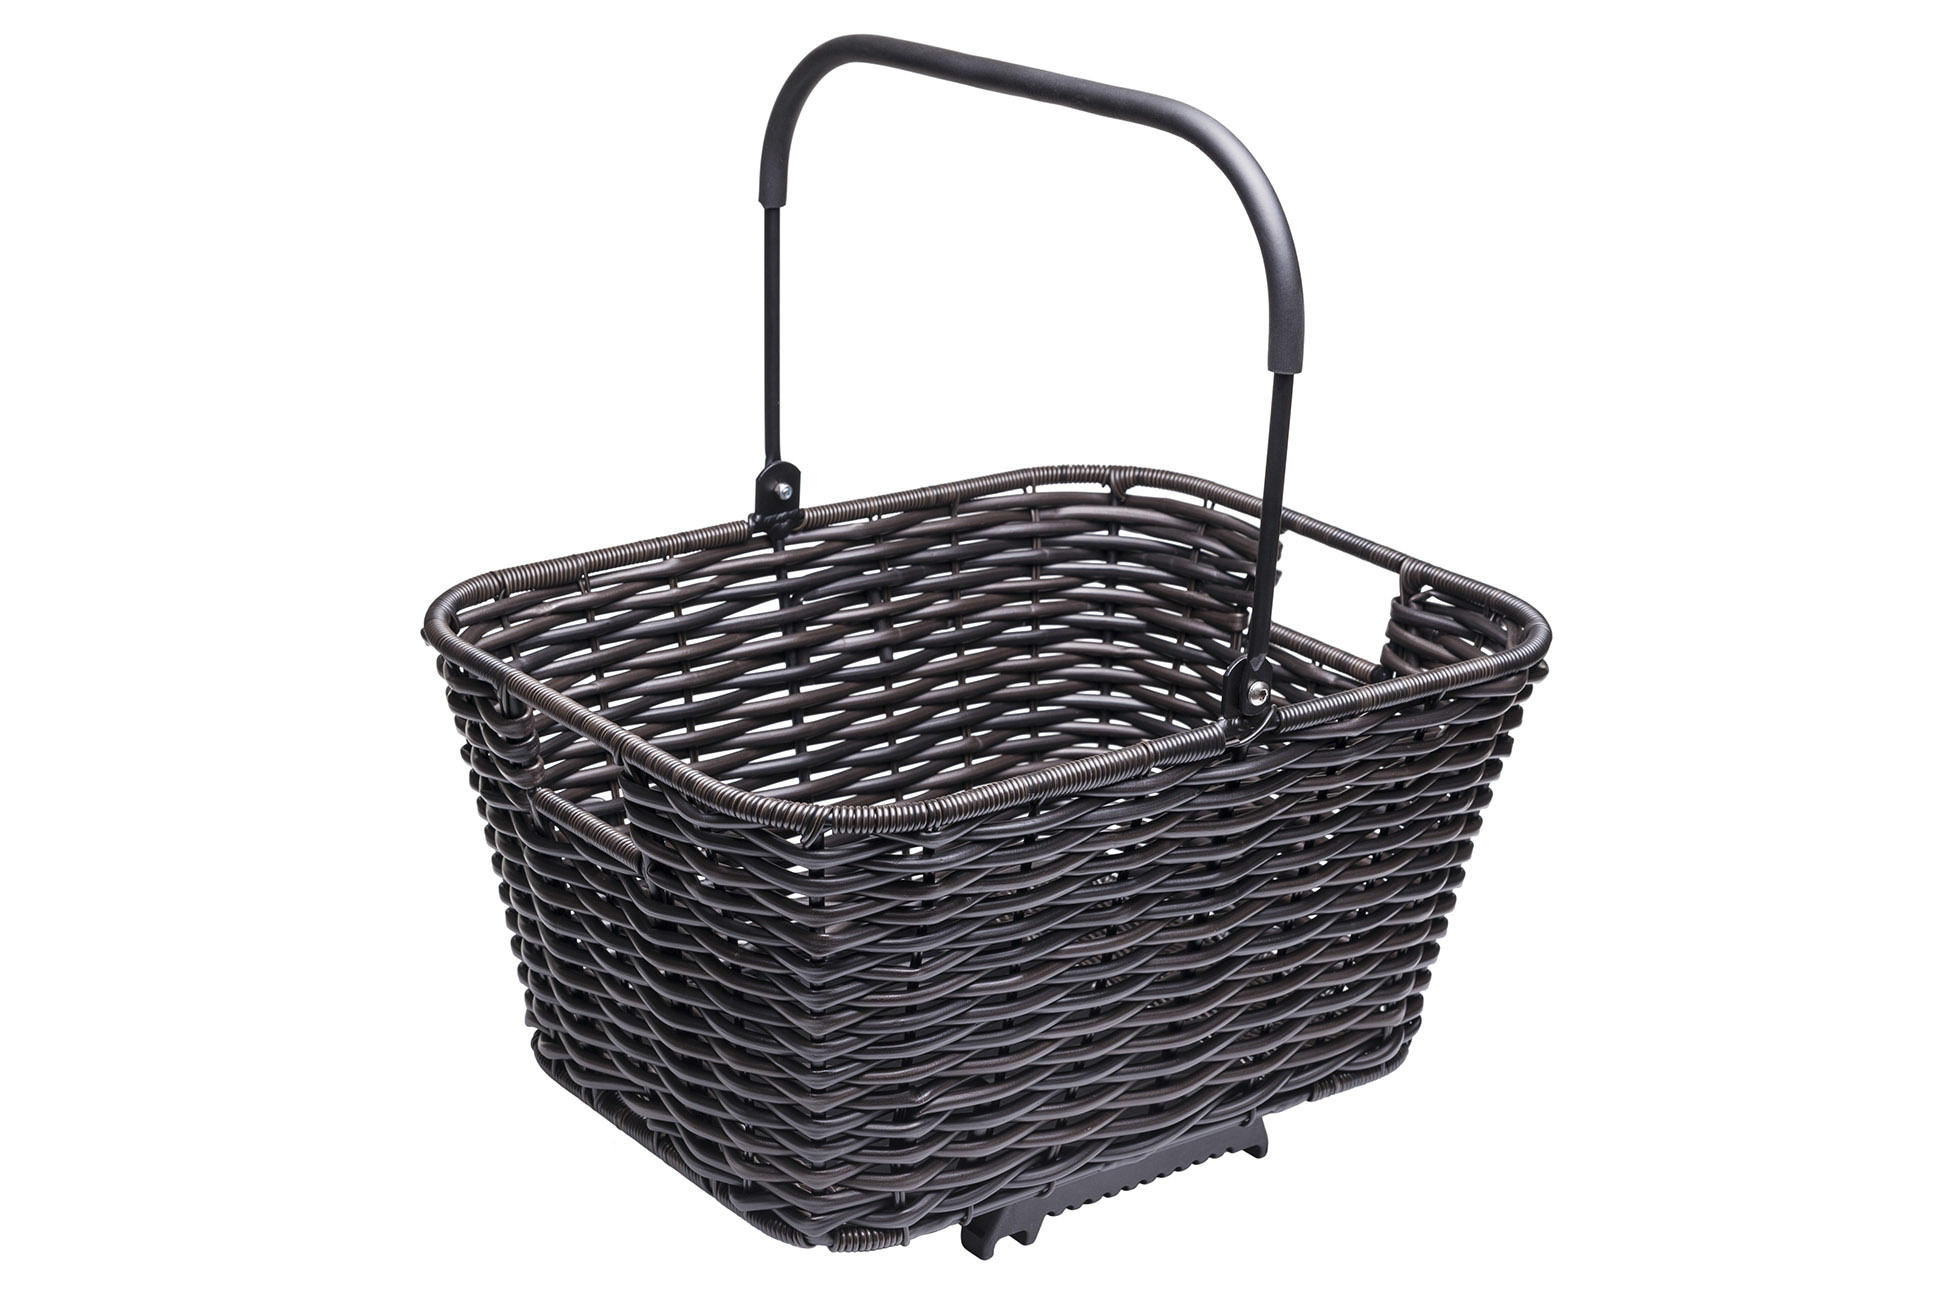 Tern Tern Market Rear Basket